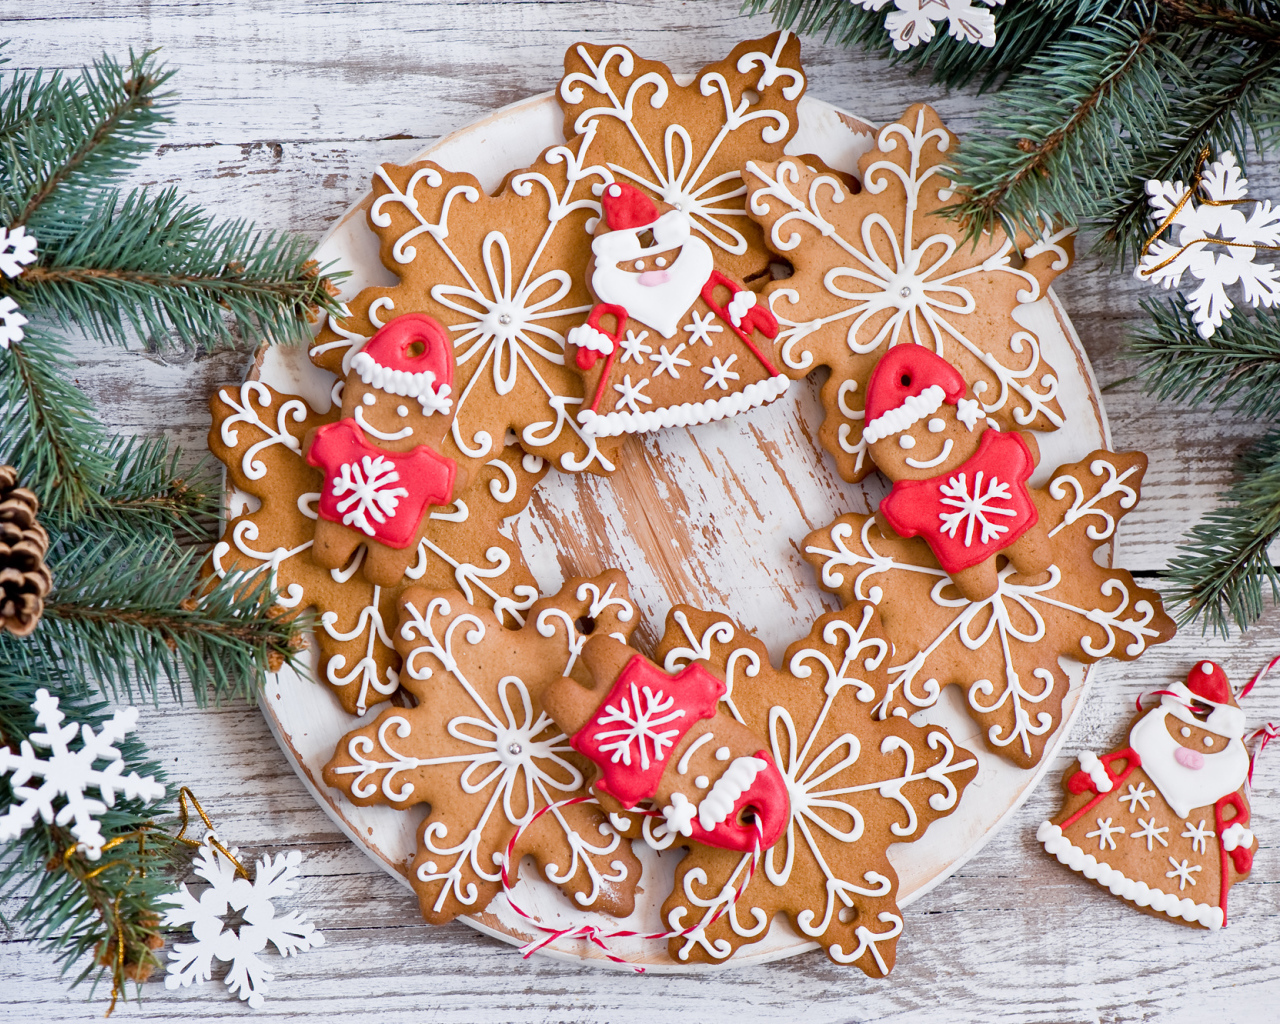 Имбирное новогоднее печенье с еловыми ветками на деревянном столе